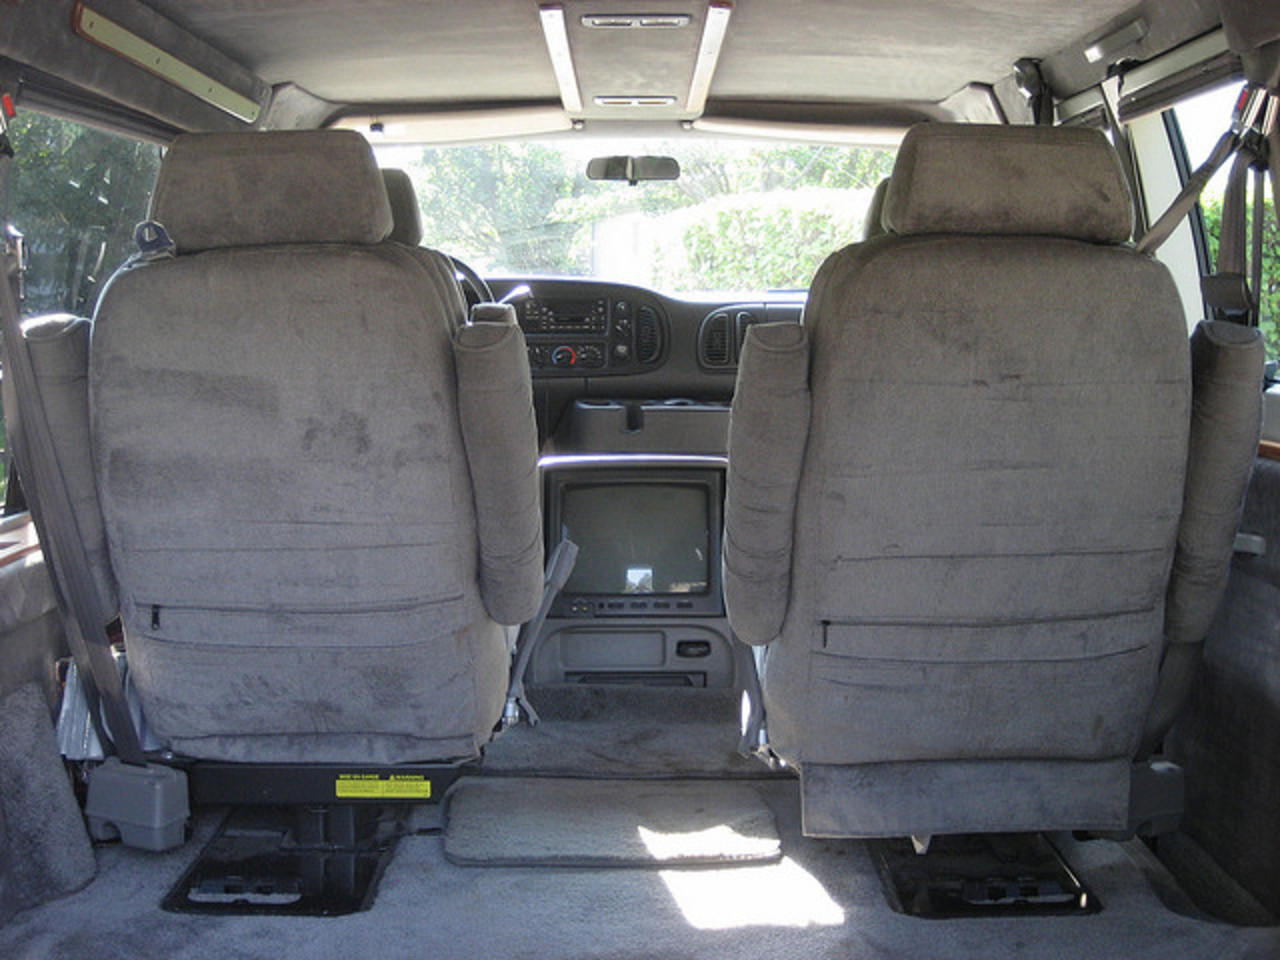 Dodge Ram Van 1500 rear interior | Flickr - Photo Sharing!